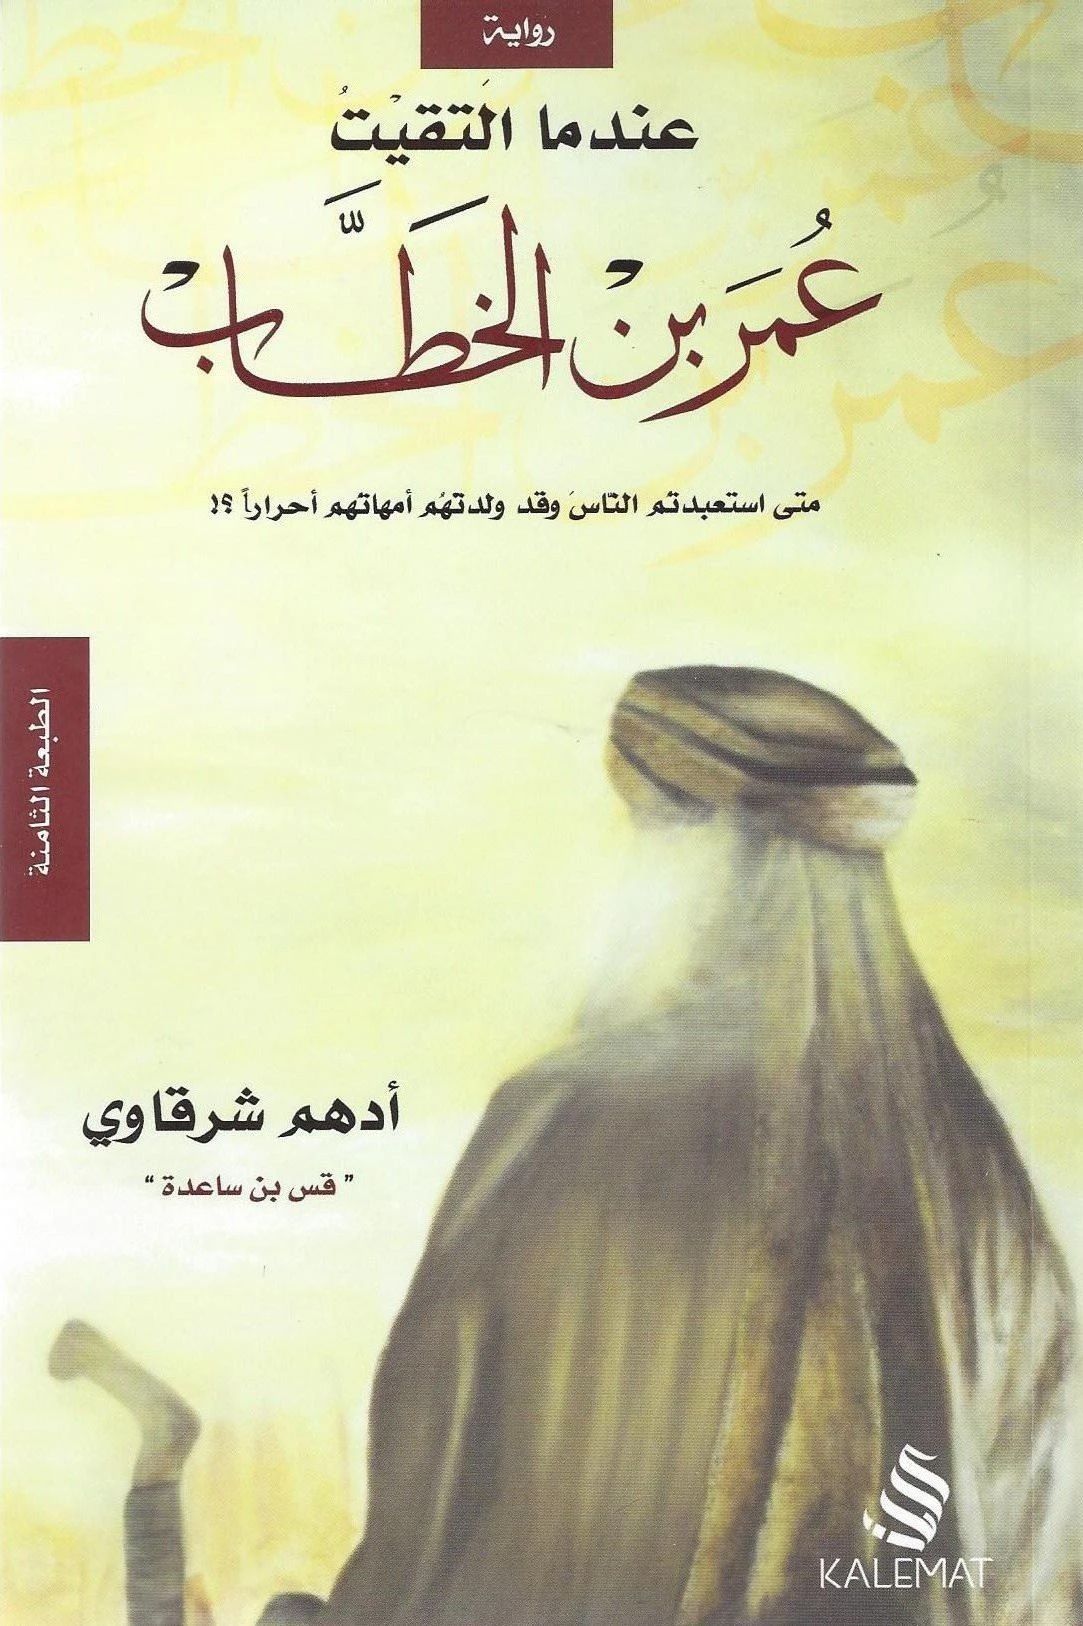 Photo of تحميل كتاب عندما التقيت عمر بن الخطاب pdf لـ أدهم الشرقاوي